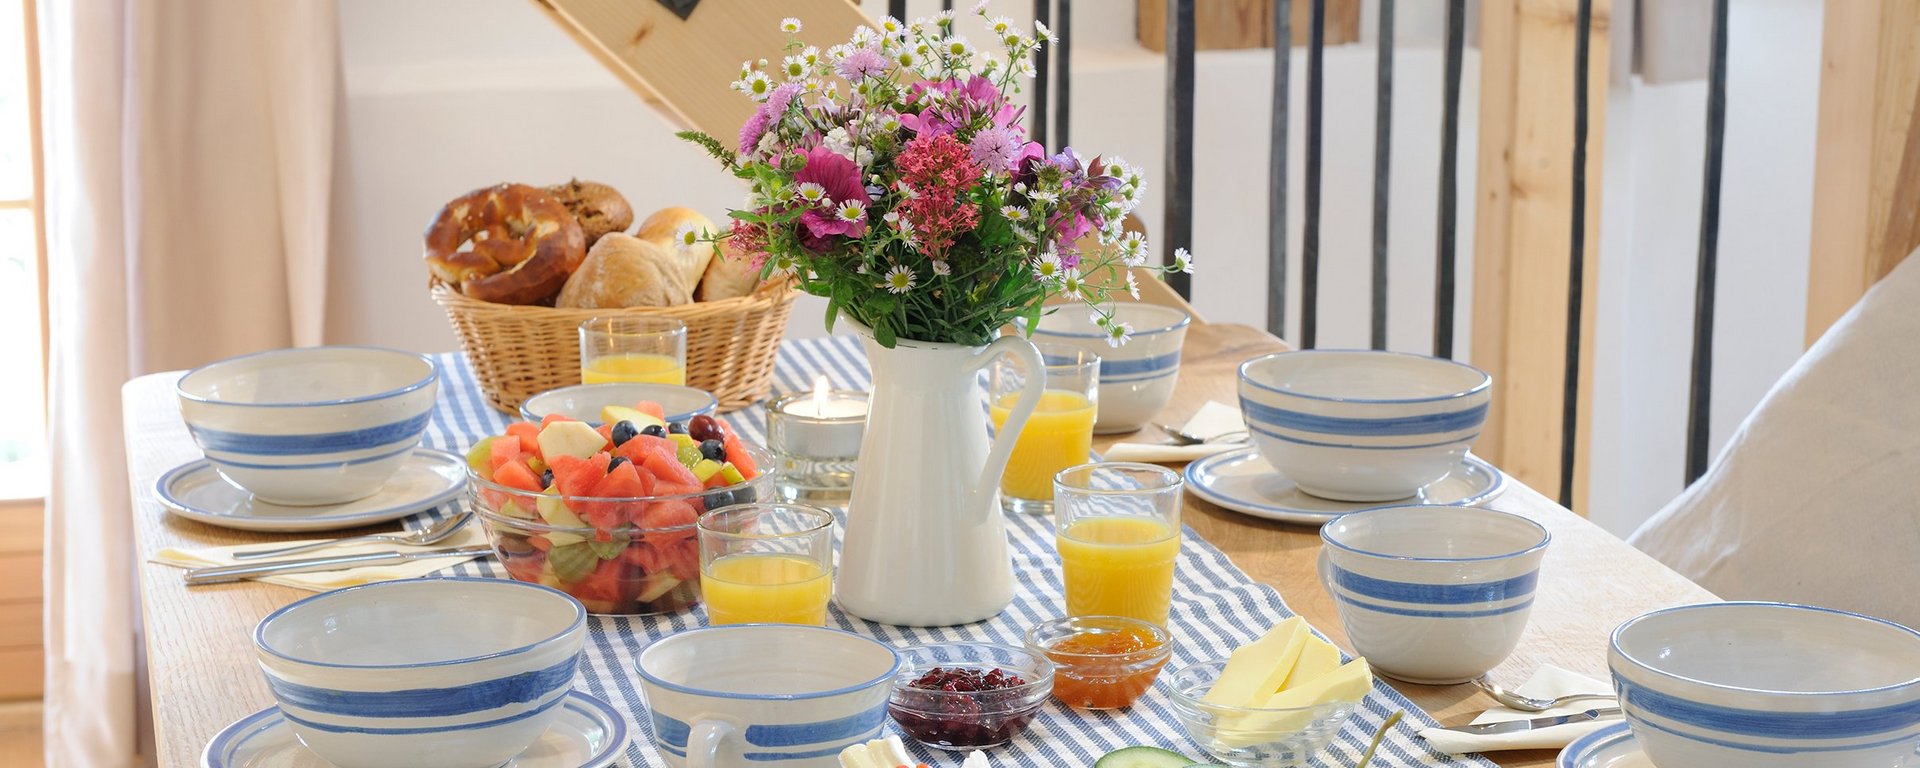 Urlaub mit Frühstück auf dem Bauernhof in Bayern